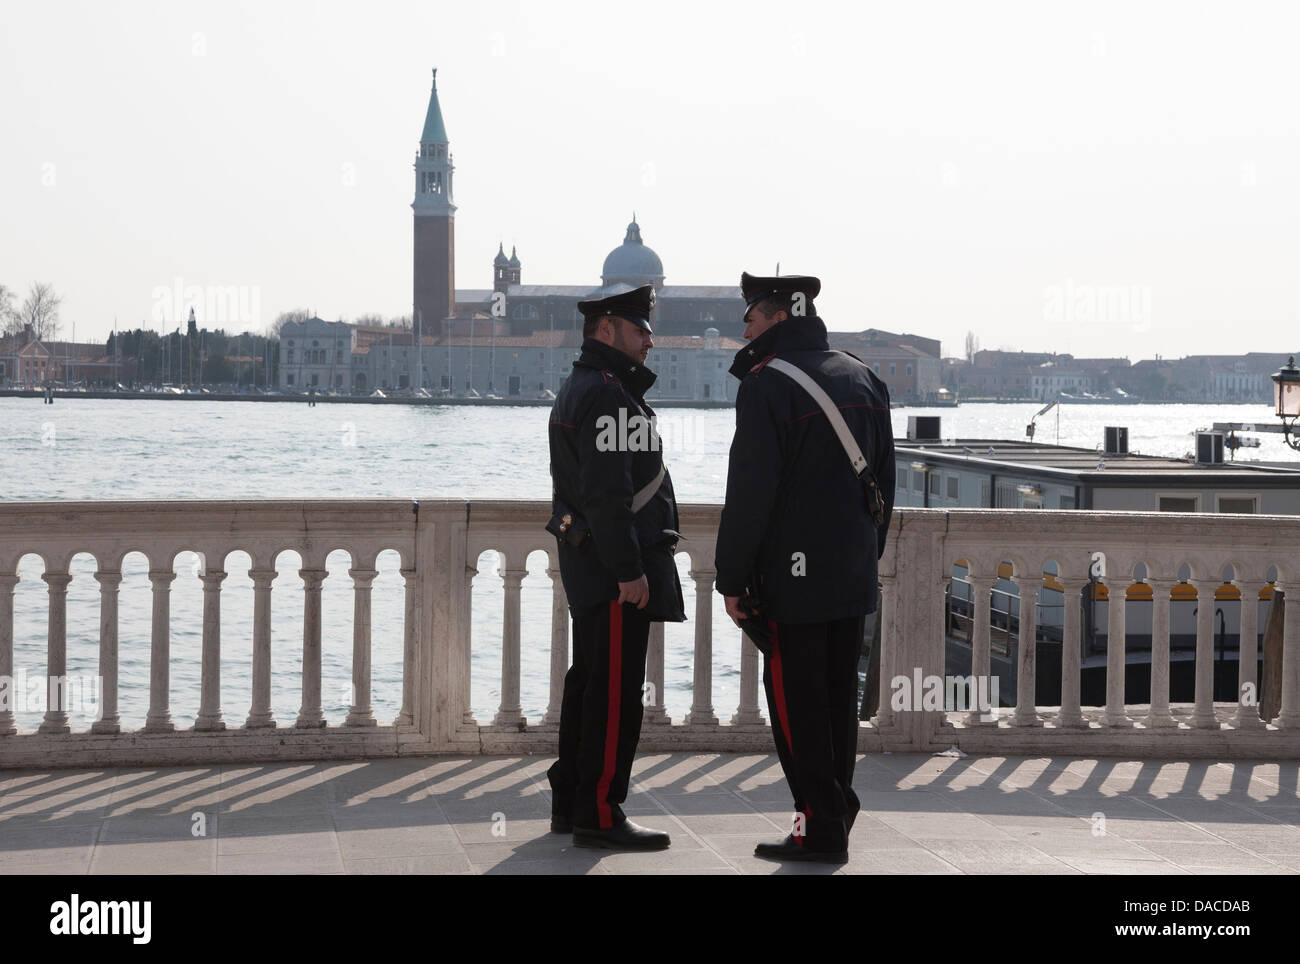 Carabinieri and San Giorgio Maggiore, Venice, Italy Stock Photo